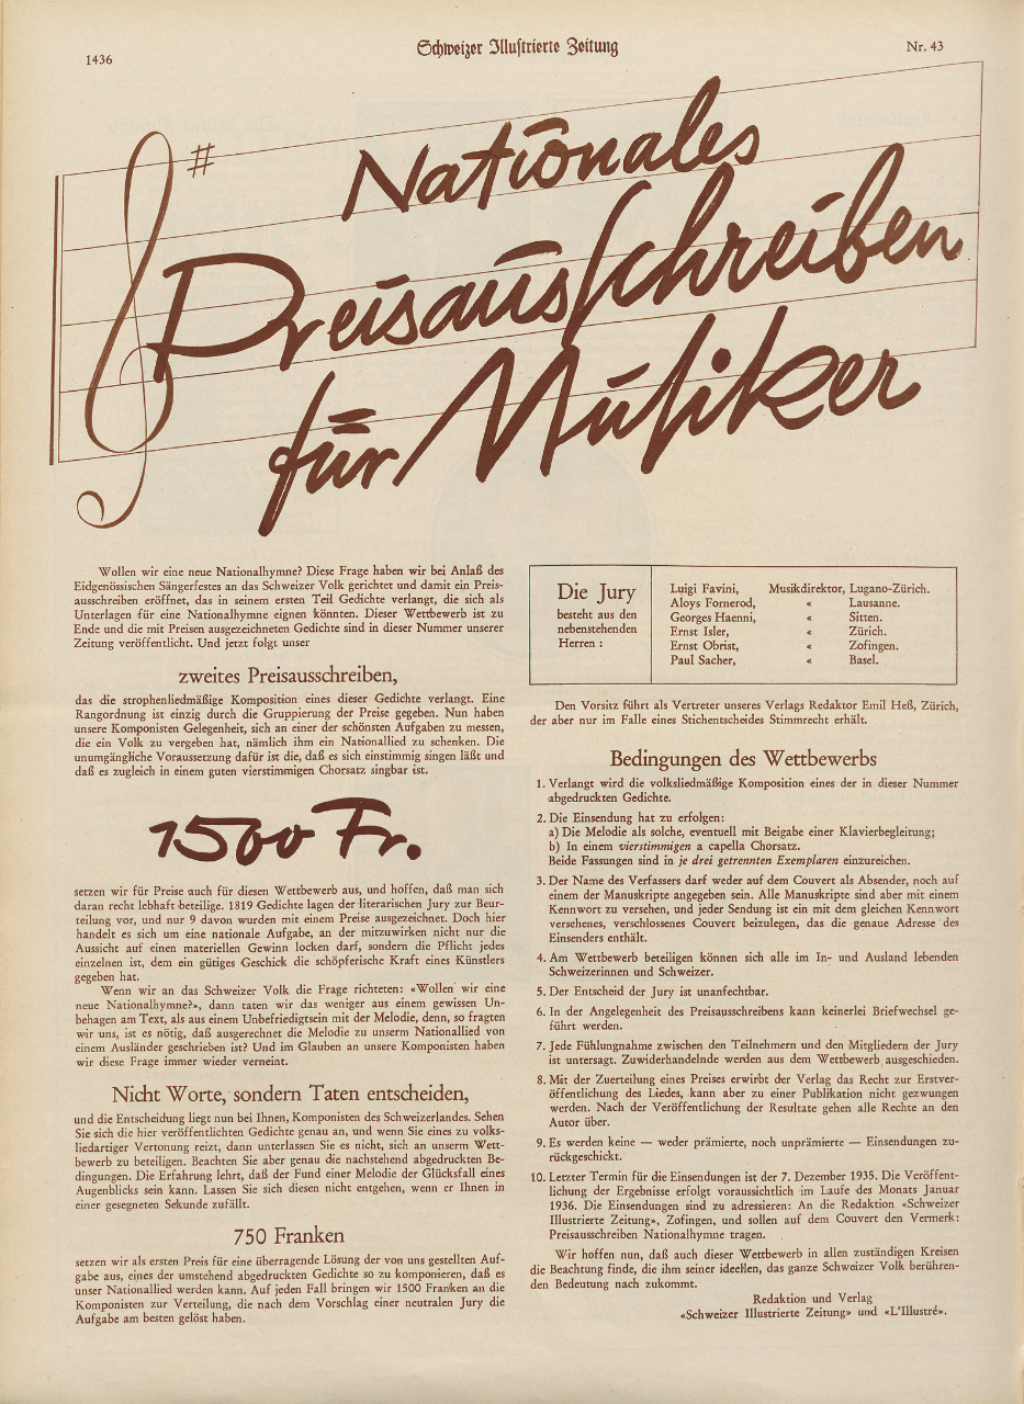 « Concours national pour les musiciens », Schweizer Illustrierte Zeitung, N°. 43, 23 octobre 1935